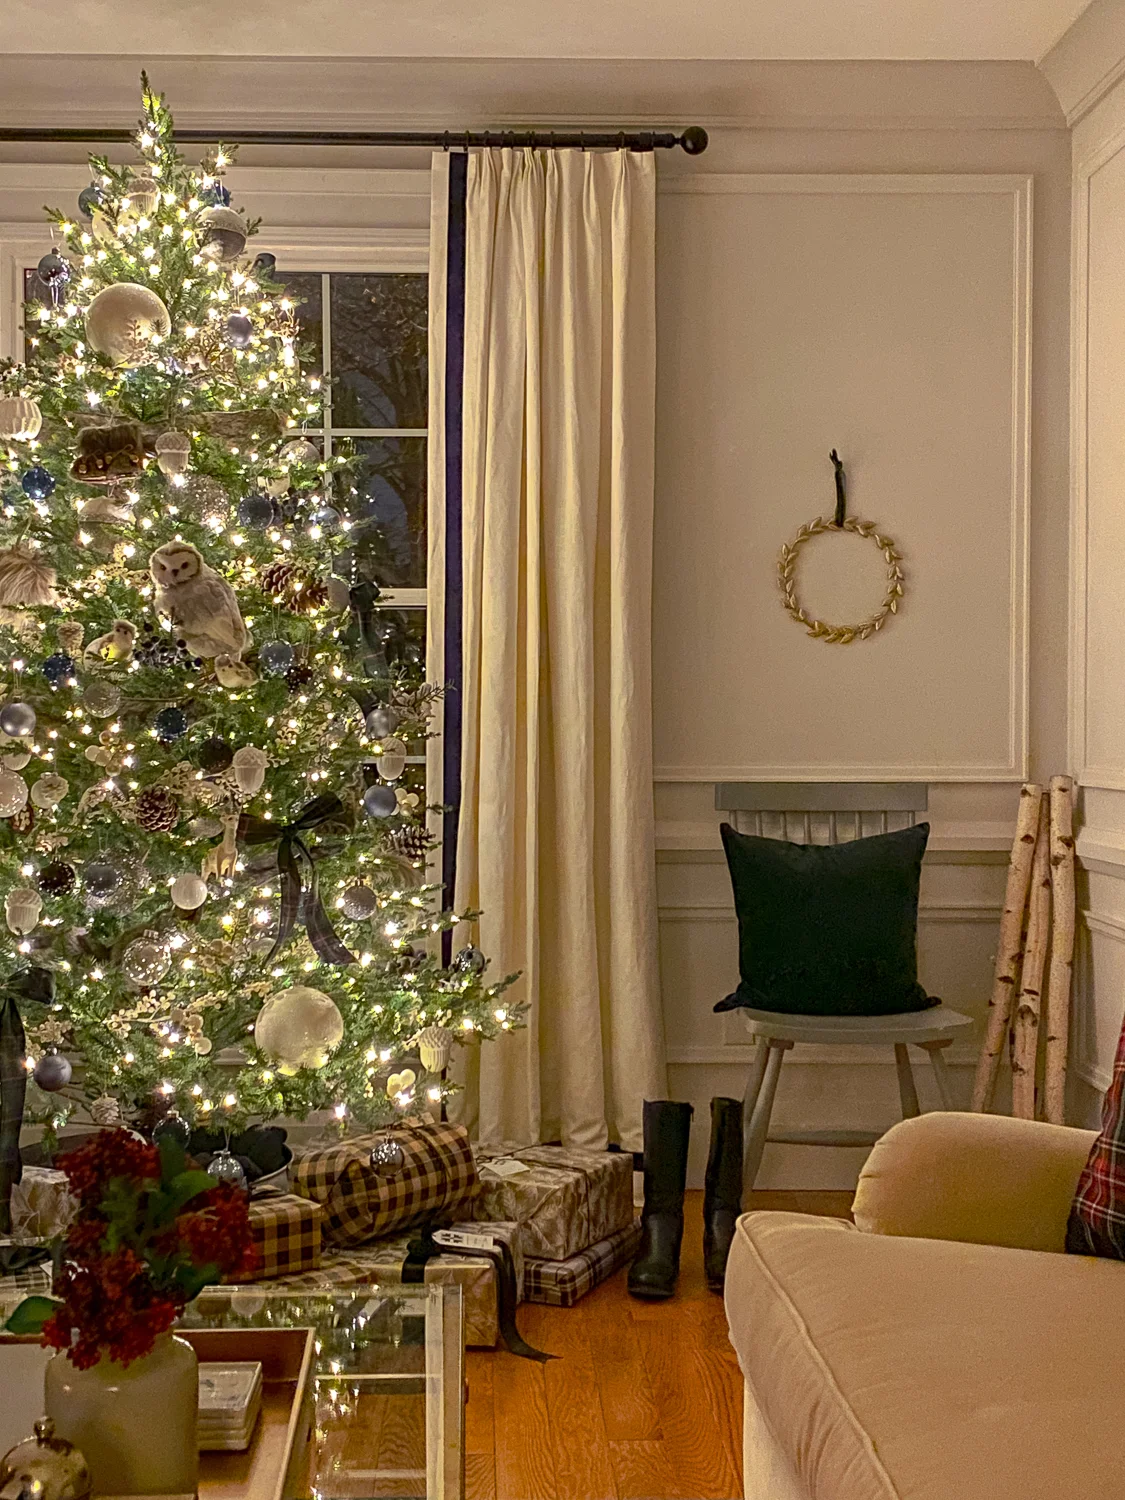 traditional living room at christmas, christmas tree at night, christmas living room at night